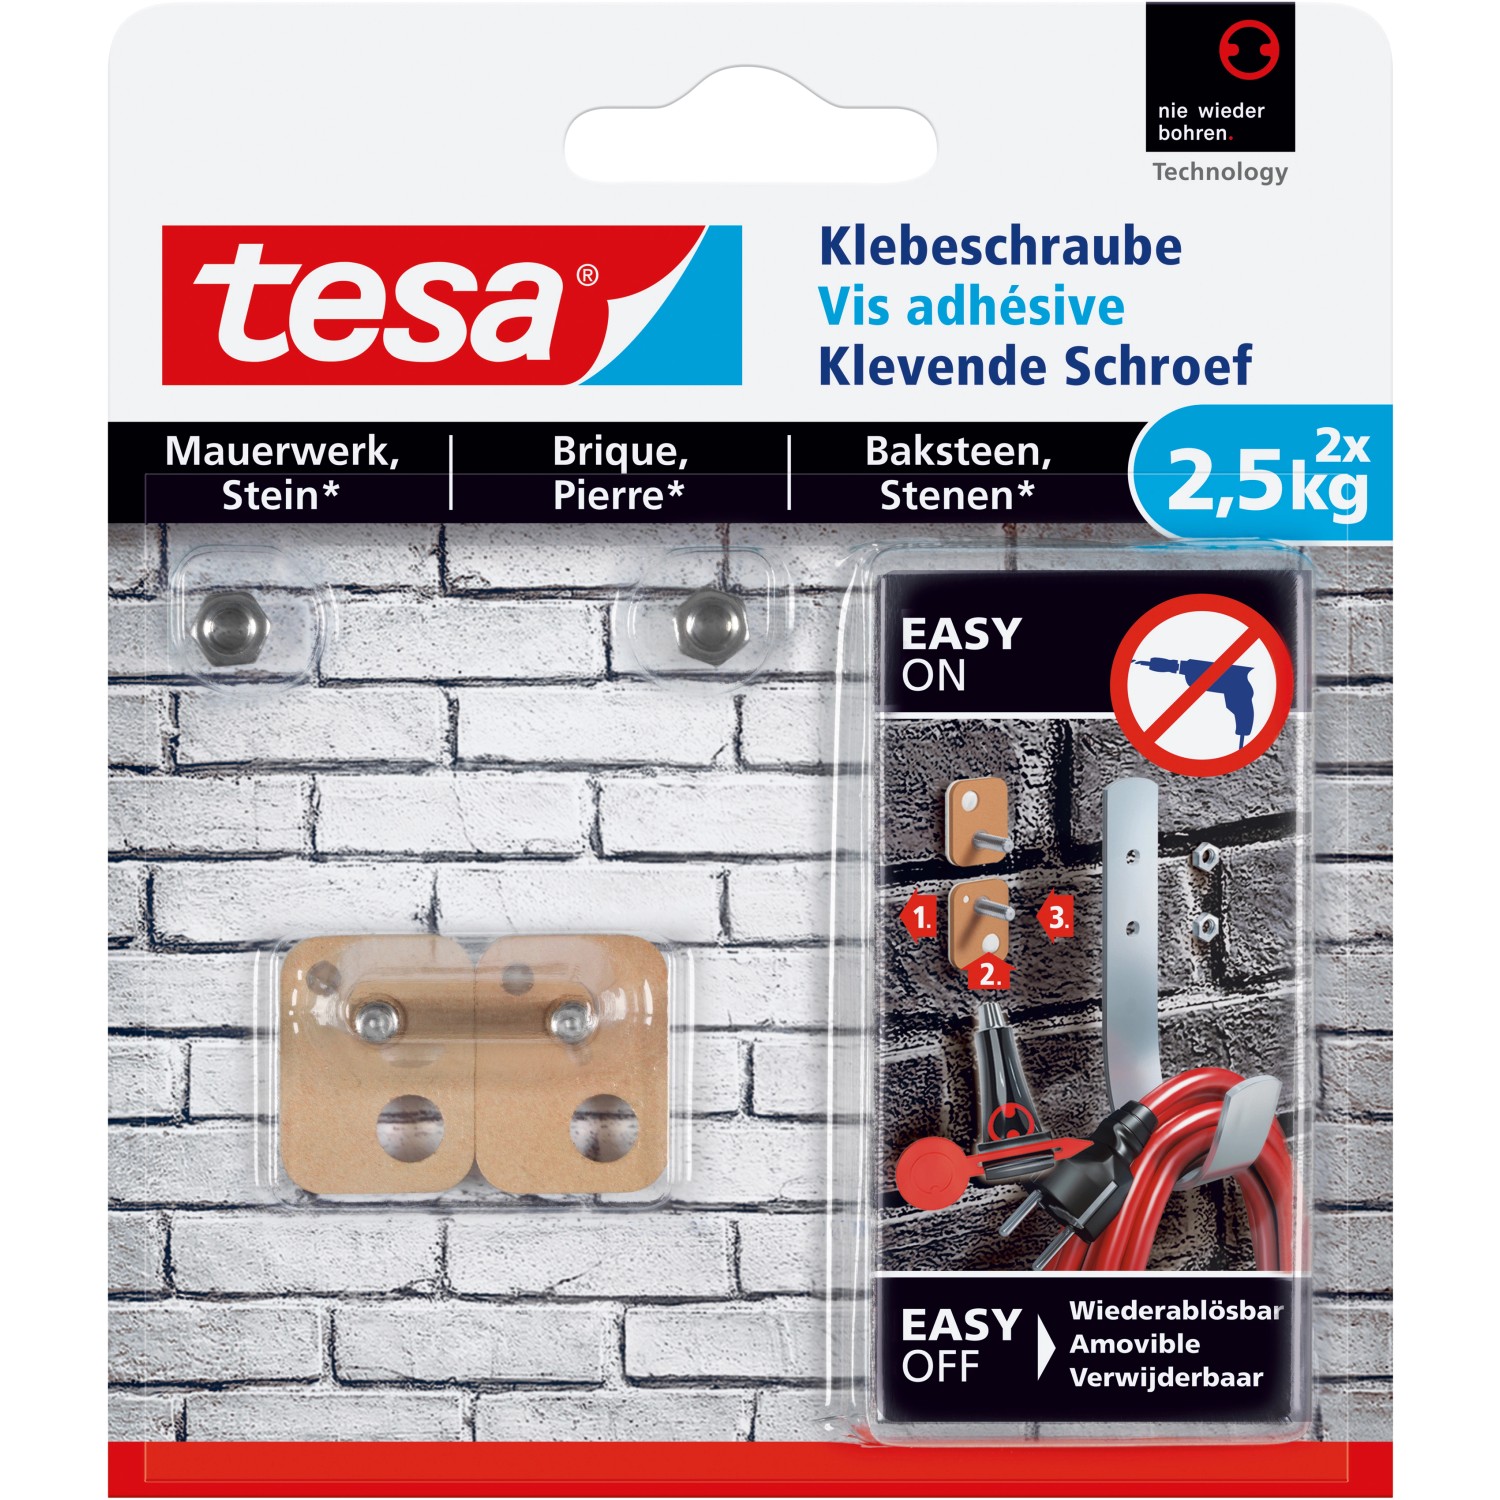 Tesa Klebeschraube für Mauerwerk und Stein rechteckig (max. 2,5 kg)